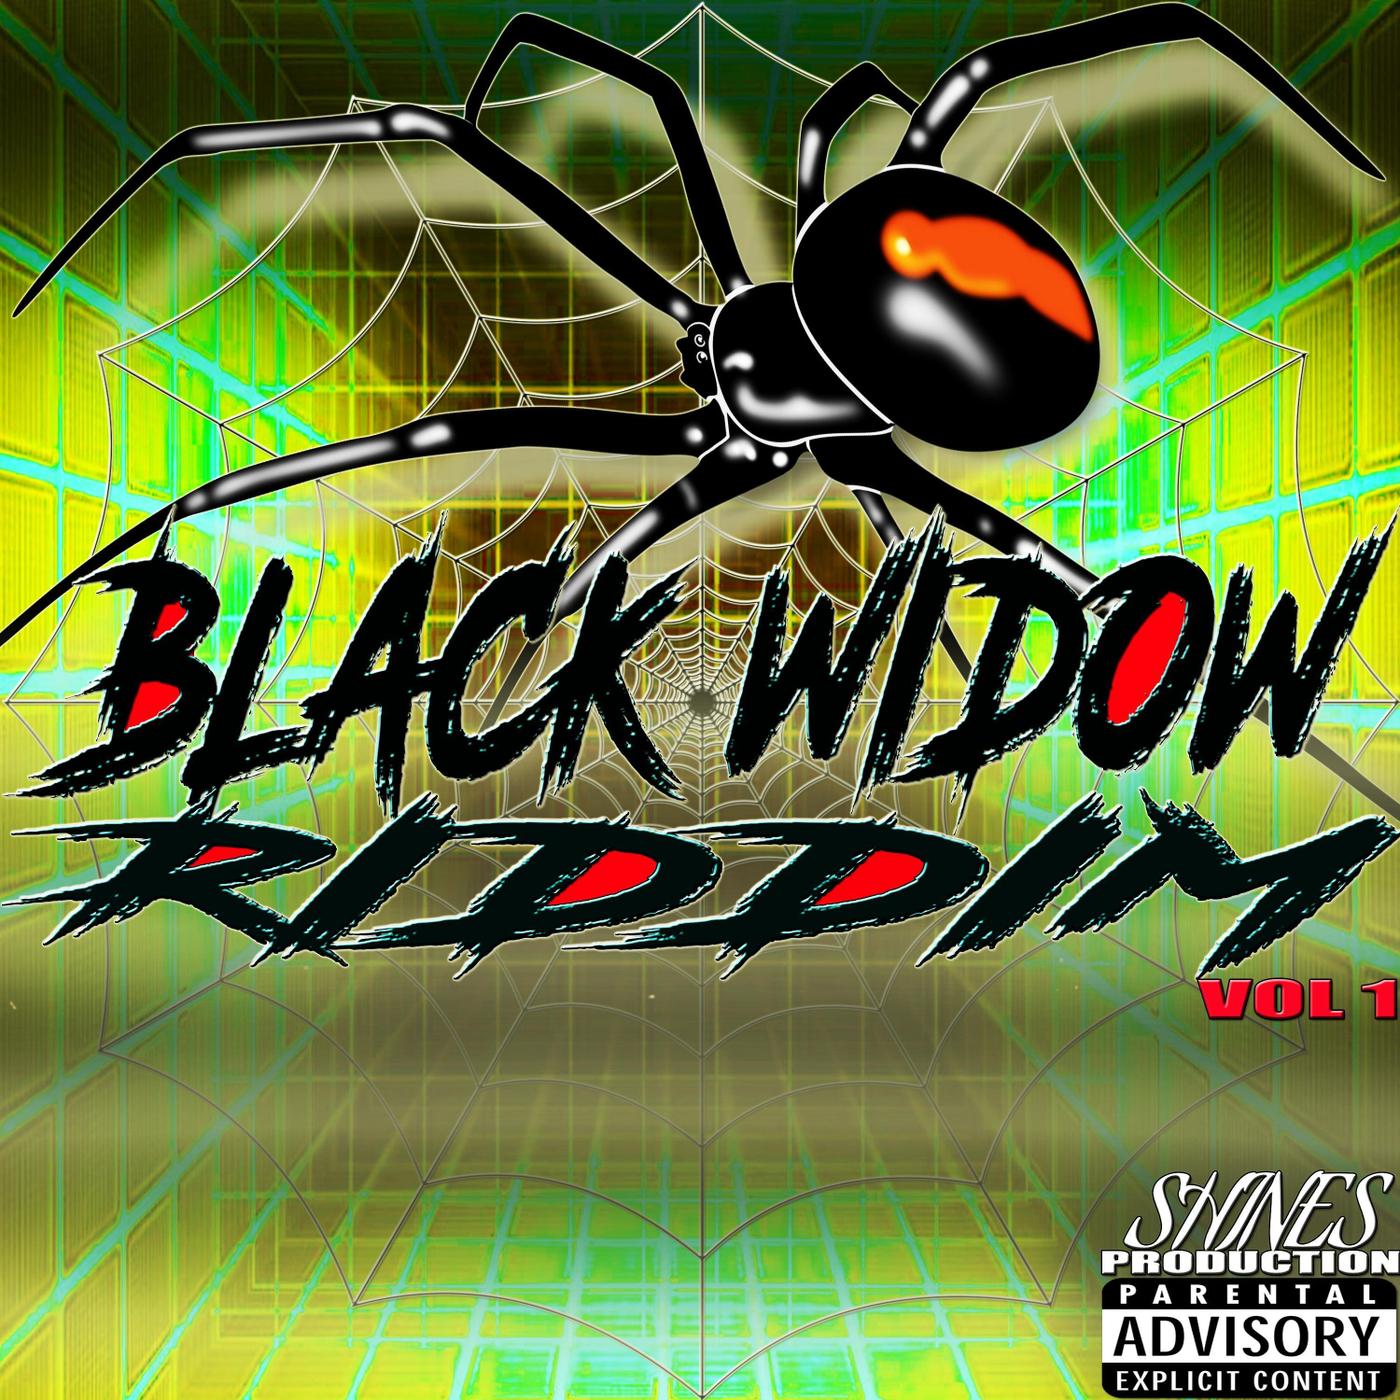 Black Widow Riddim, Vol. 1